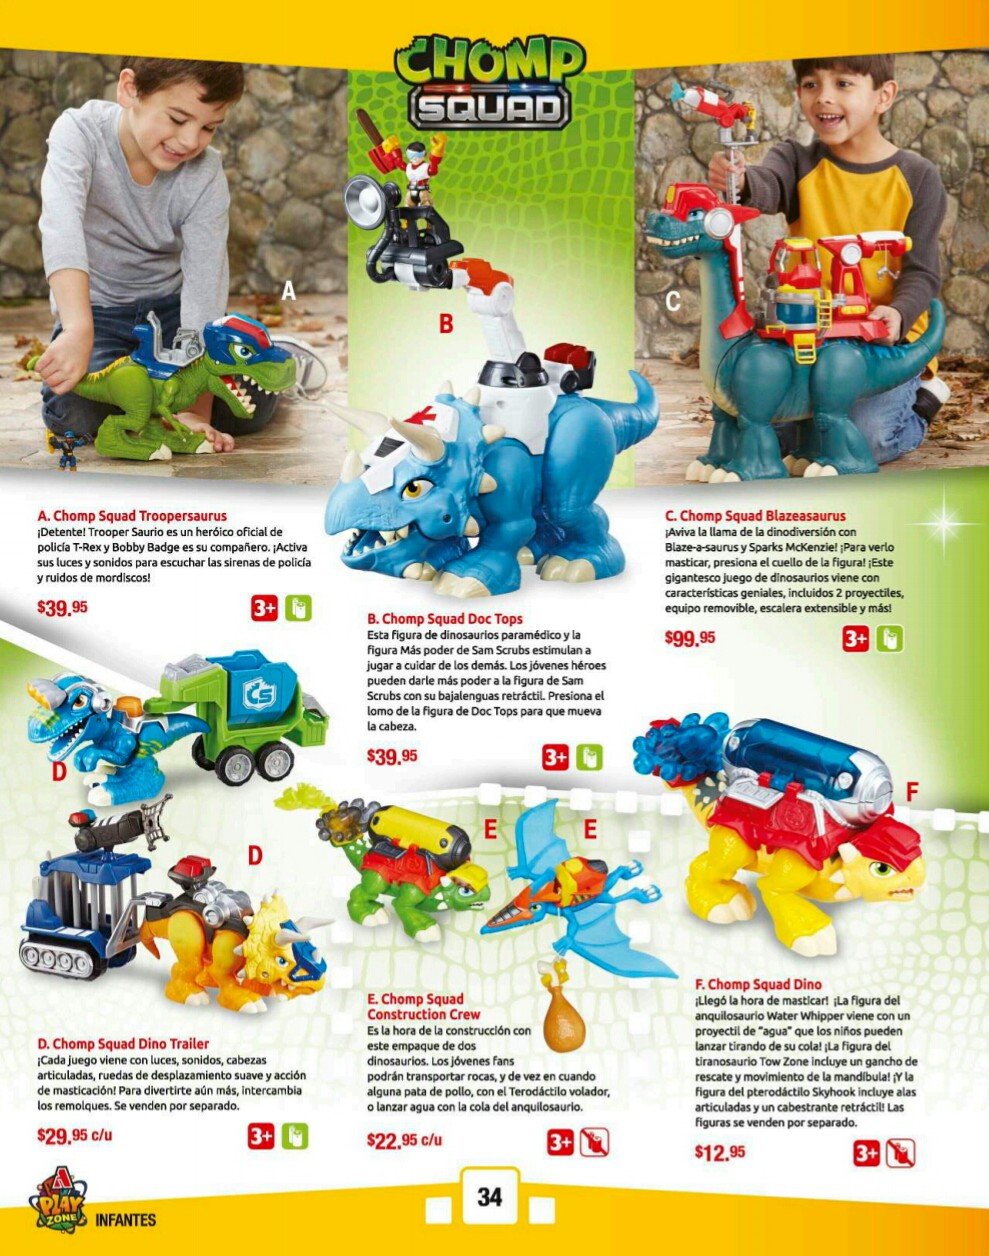 Catalogos juguetes farmacia Arrocha 2018 p34